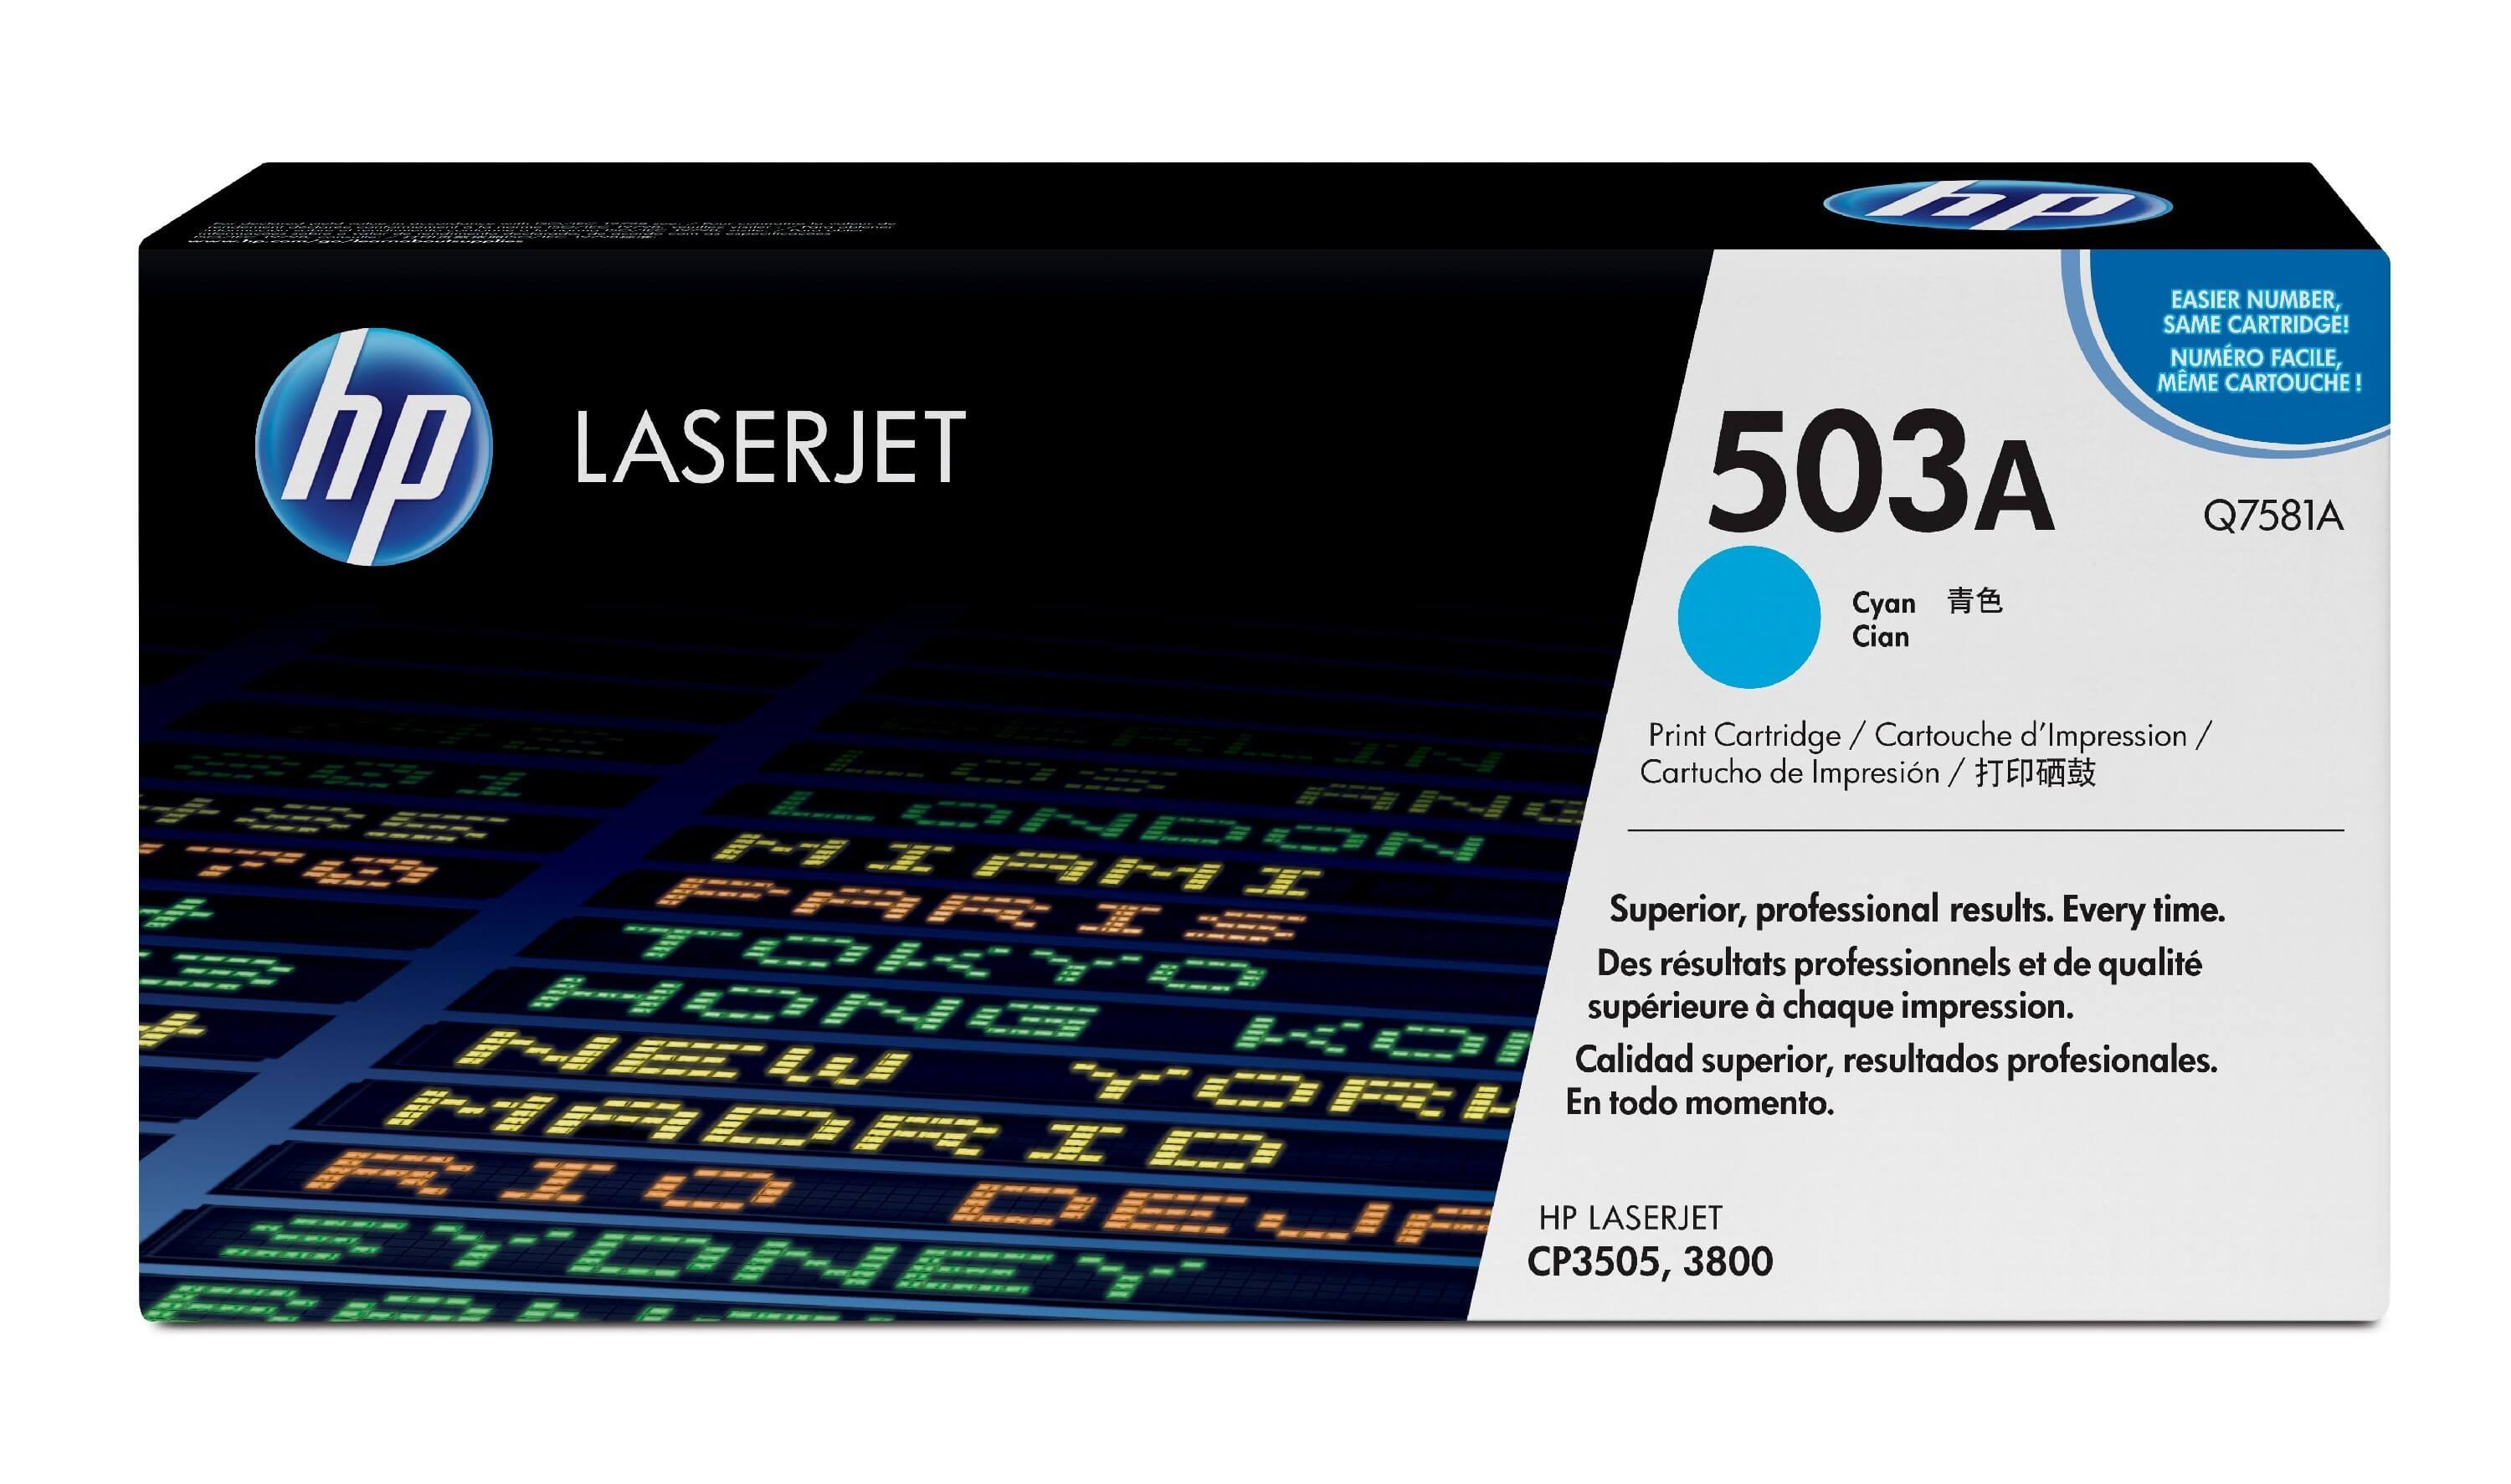 Original Toner HP Color LaserJet CP 3505 DN (Q7581A / 503A) Cyan